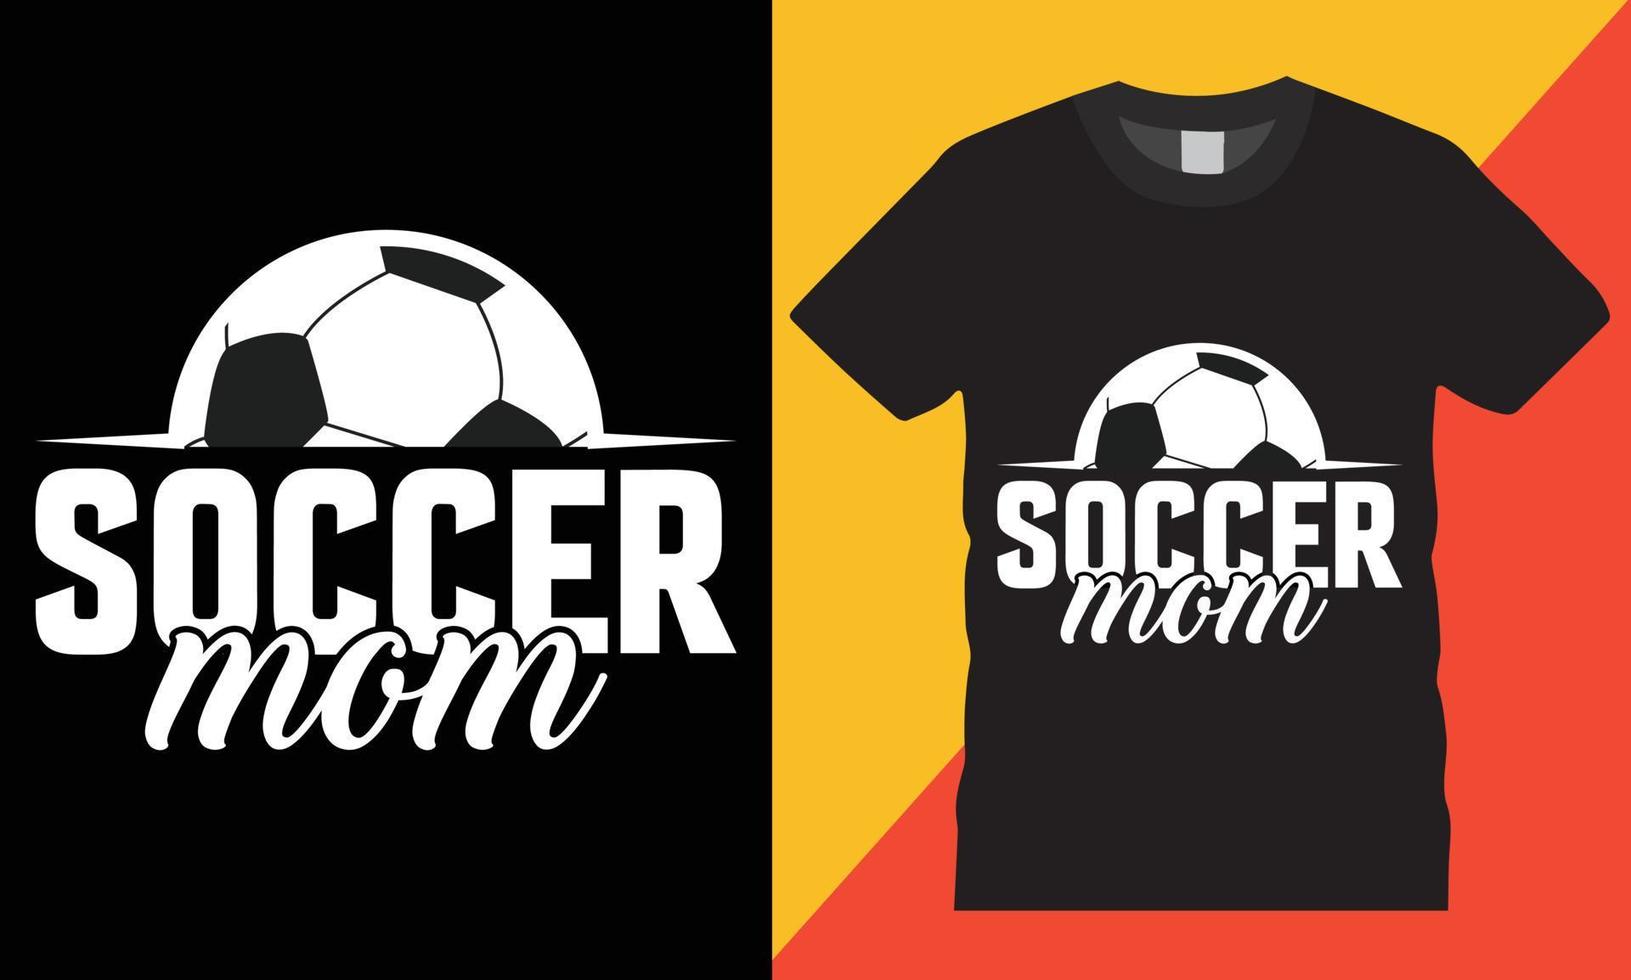 Typografie Fußball kreativ T-Shirt Design Vektor